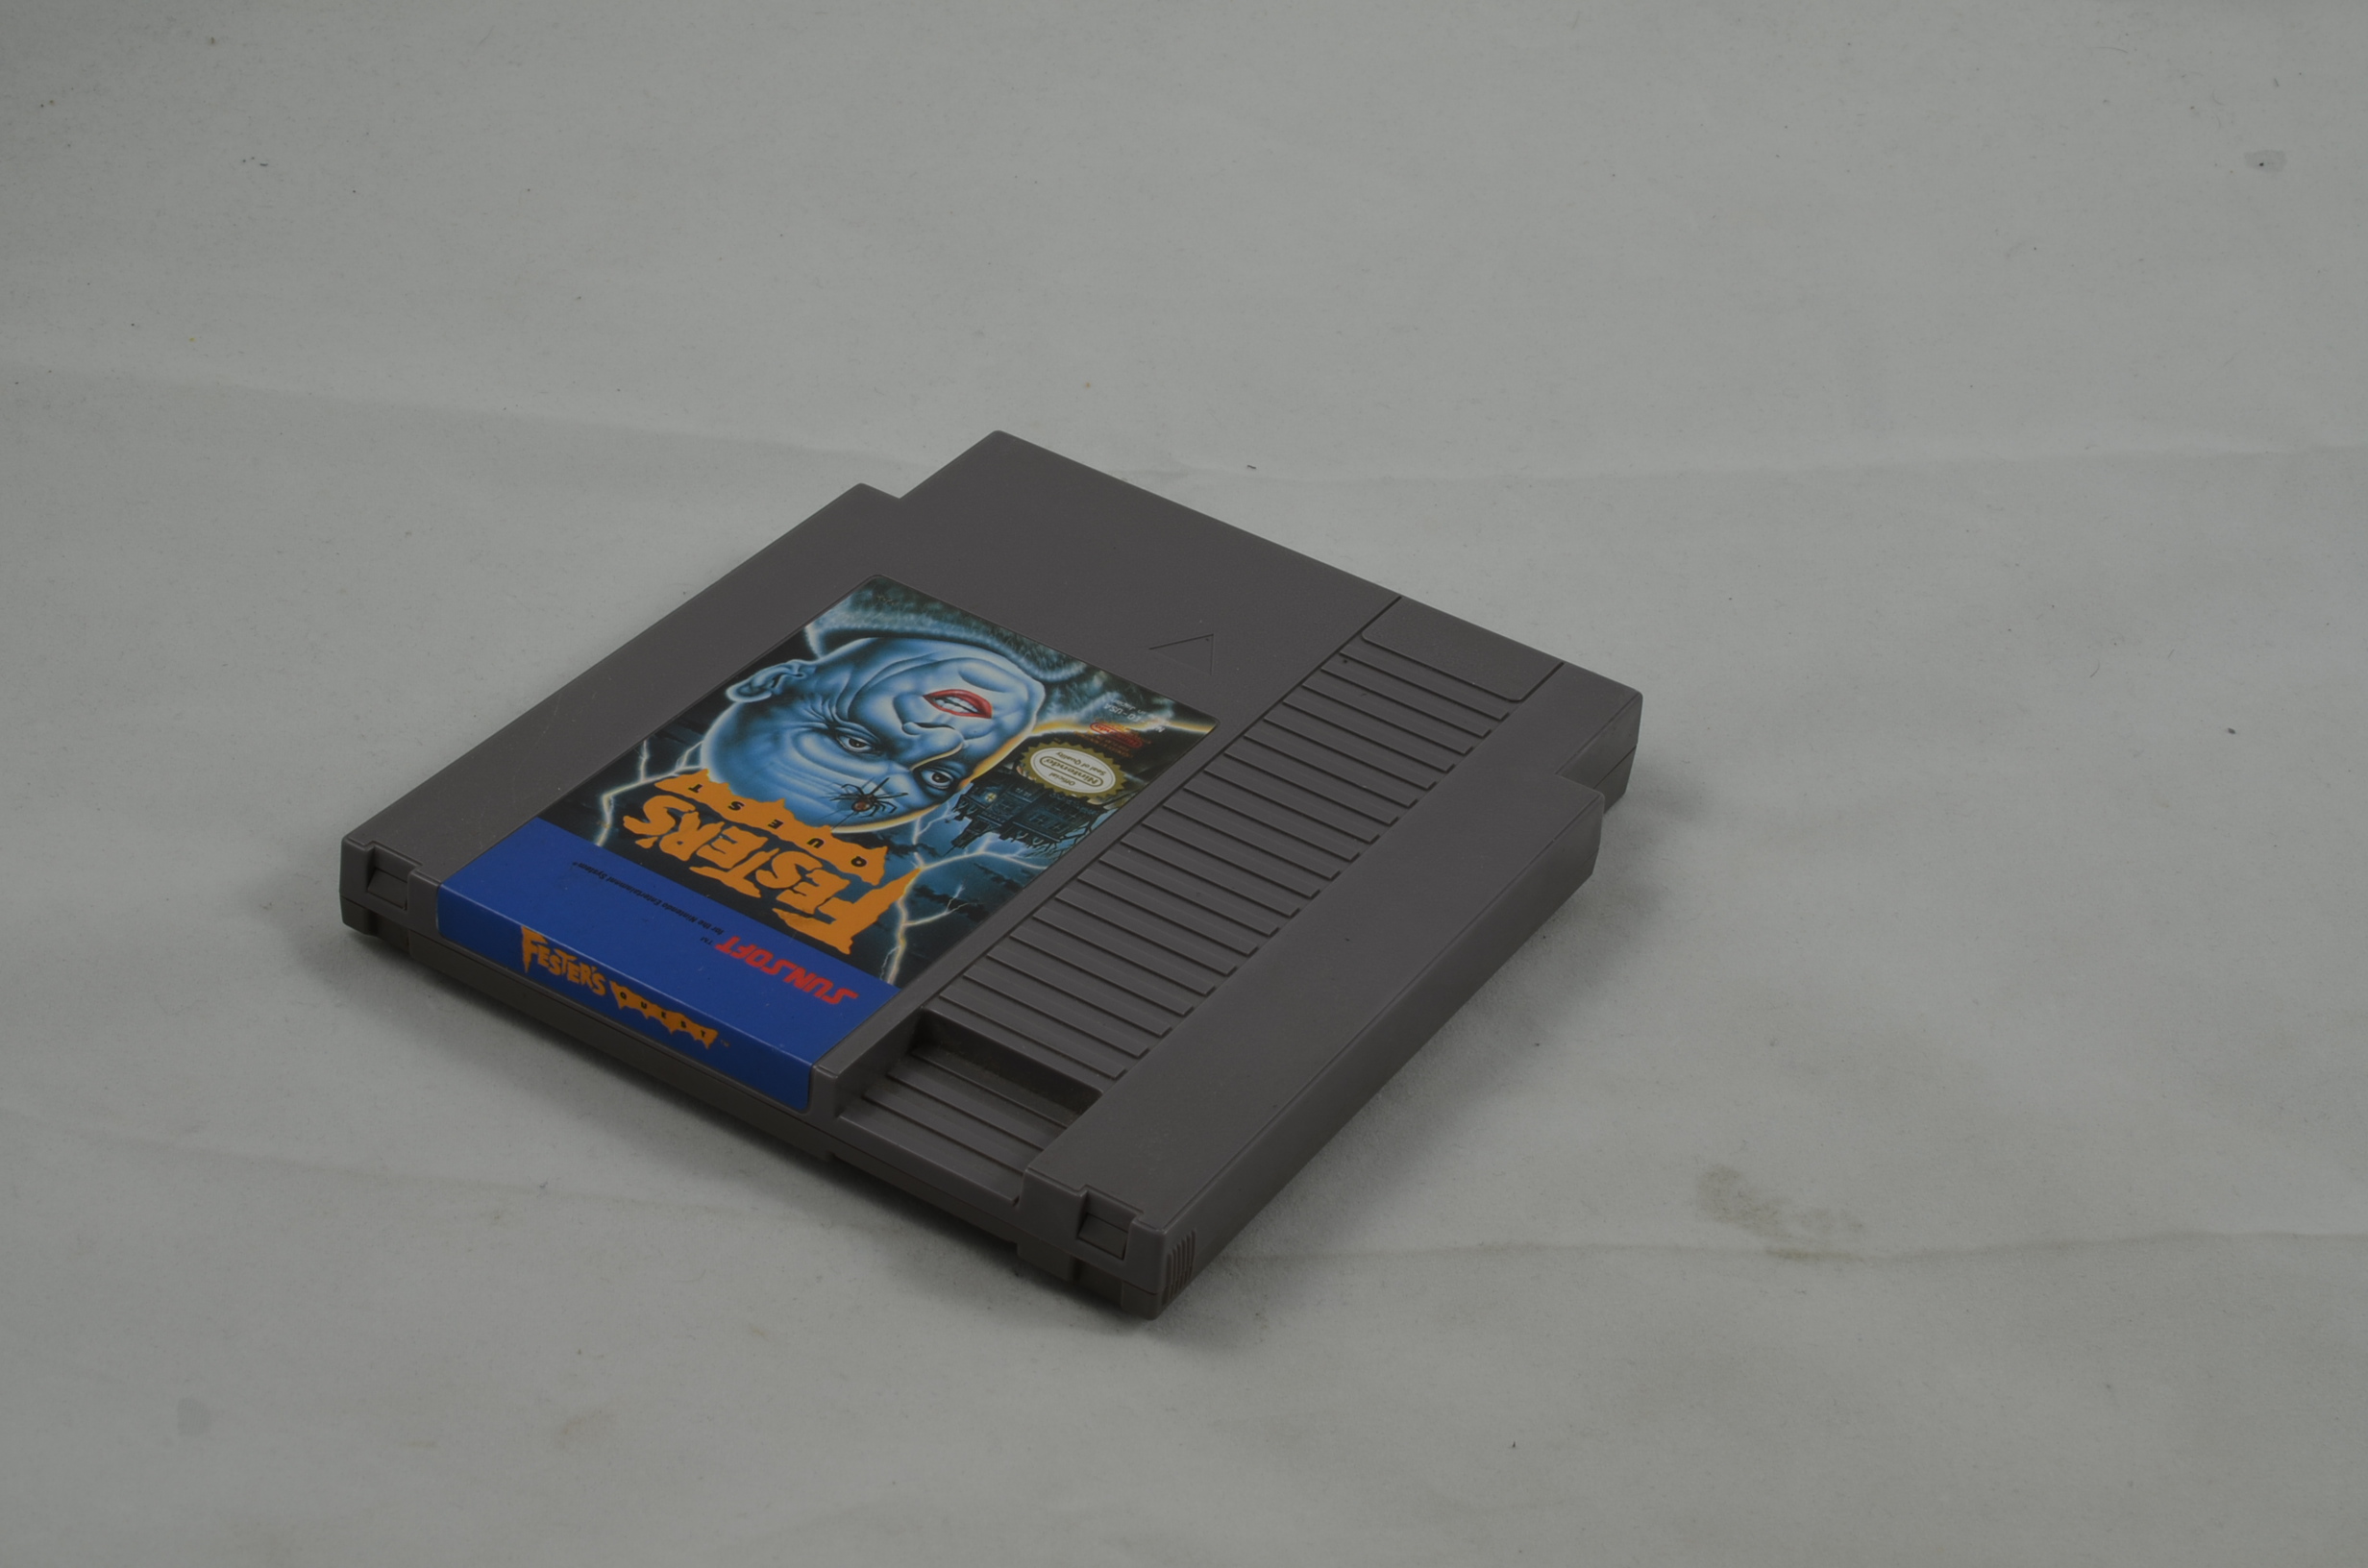 Produktbild von Fester's Quest NES Spiel (USA)